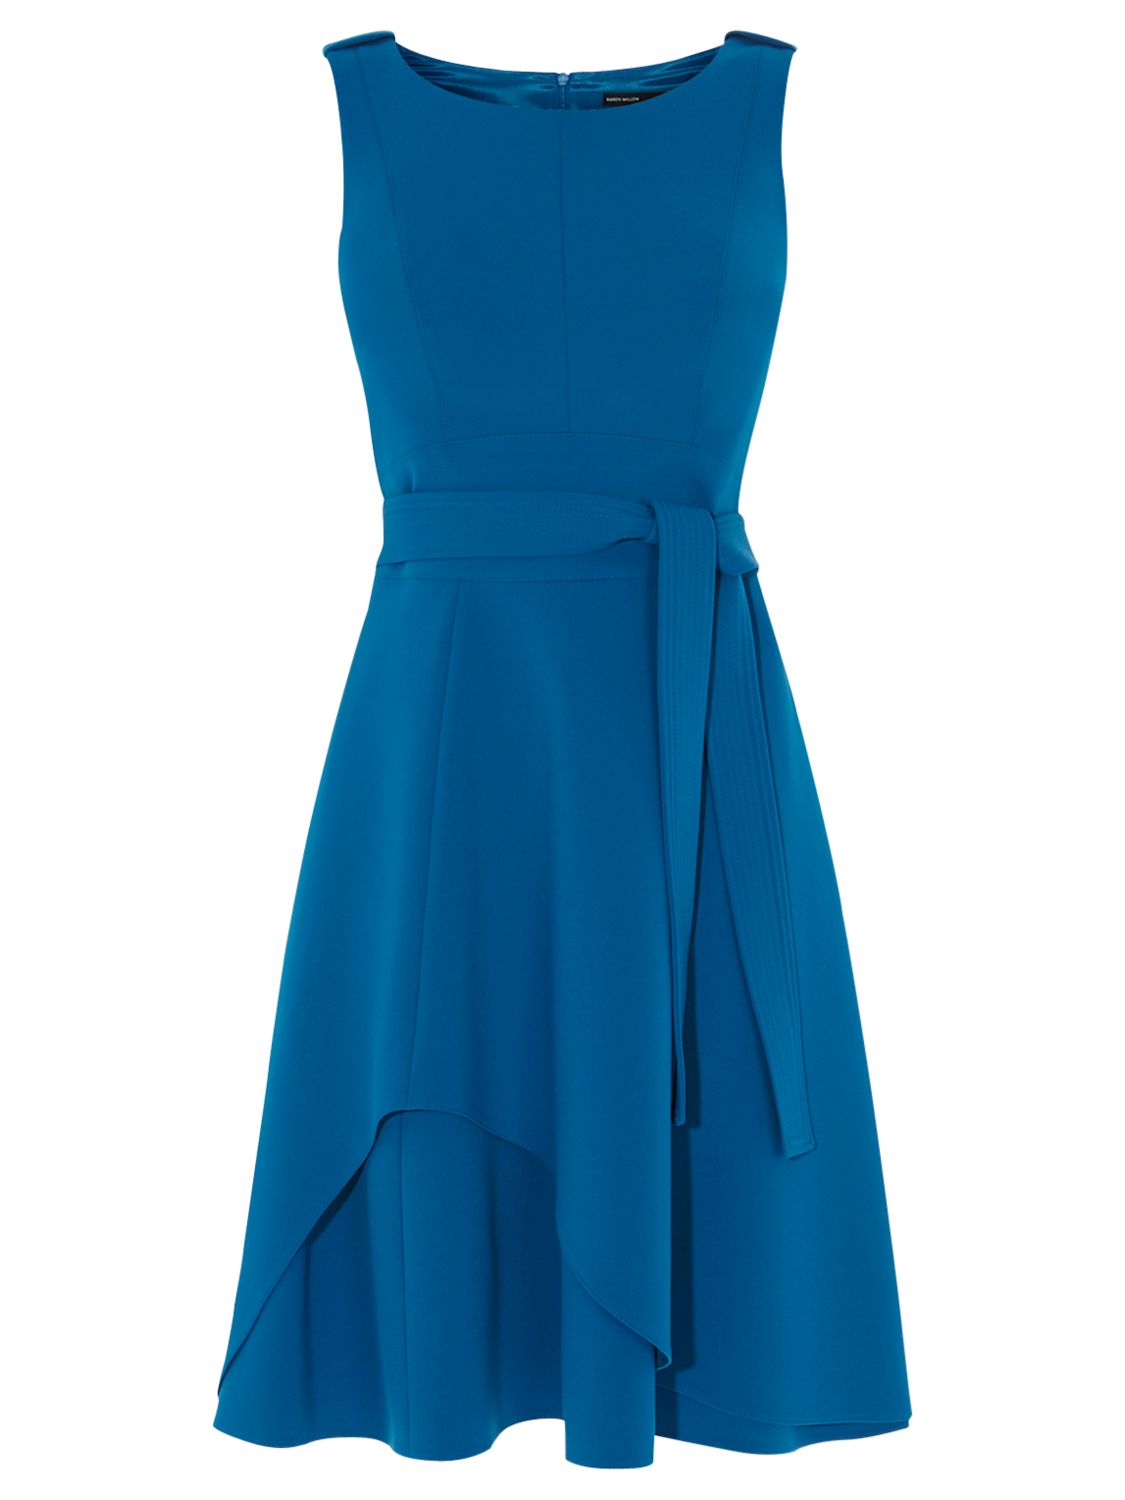 Karen Millen Fun Colourful Dress, Blue